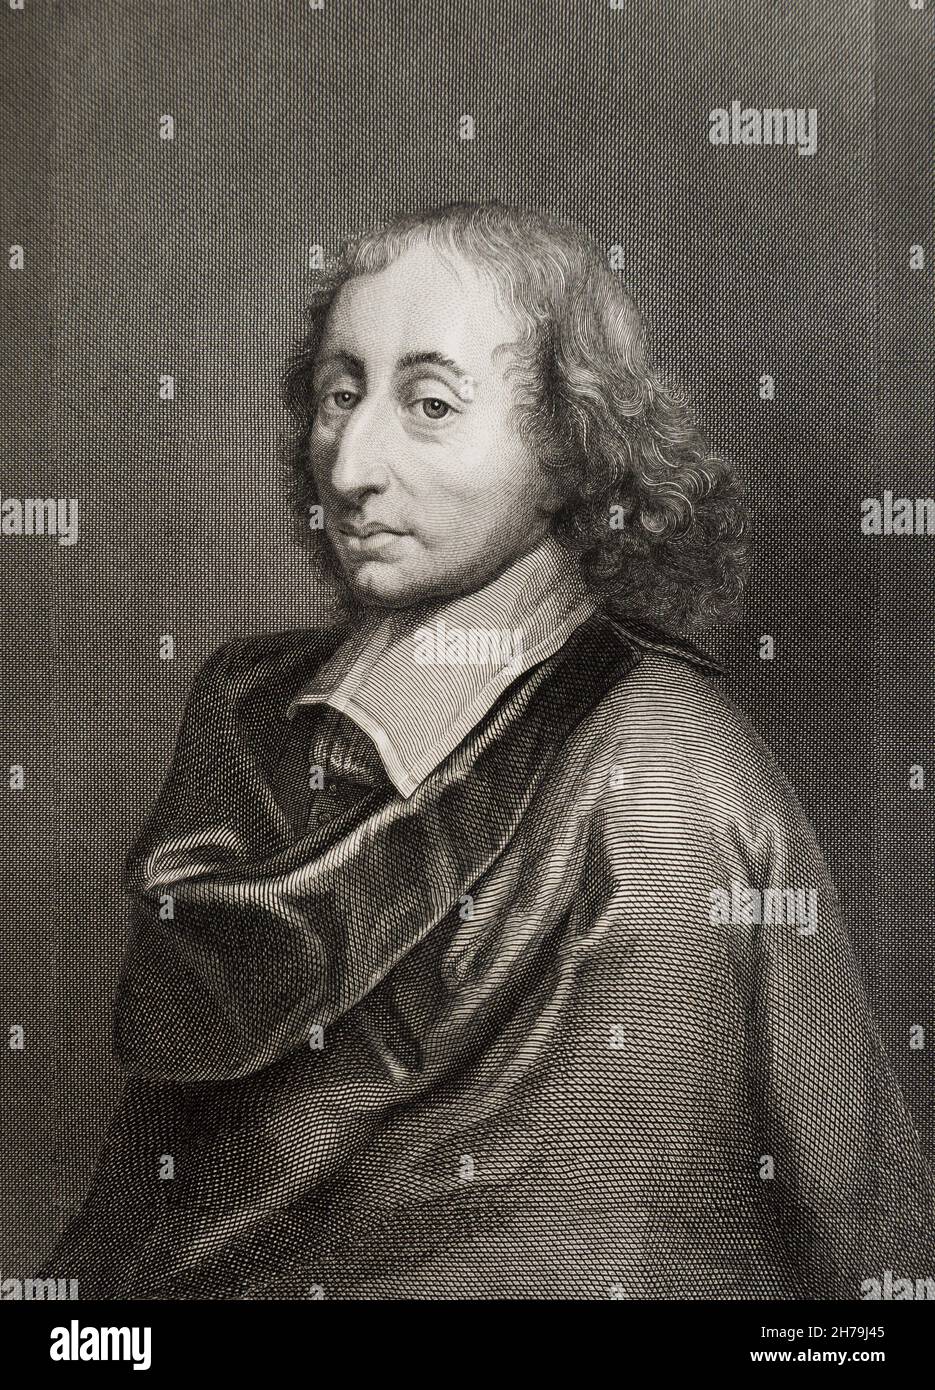 Portrait de Blaise Pascal (1623-1662), physicien, mathematicien et ecrivain francais Gravure du 19eme siecle ©Archives-Zephyr/Opale.photo *** Local Caption *** Stock Photo